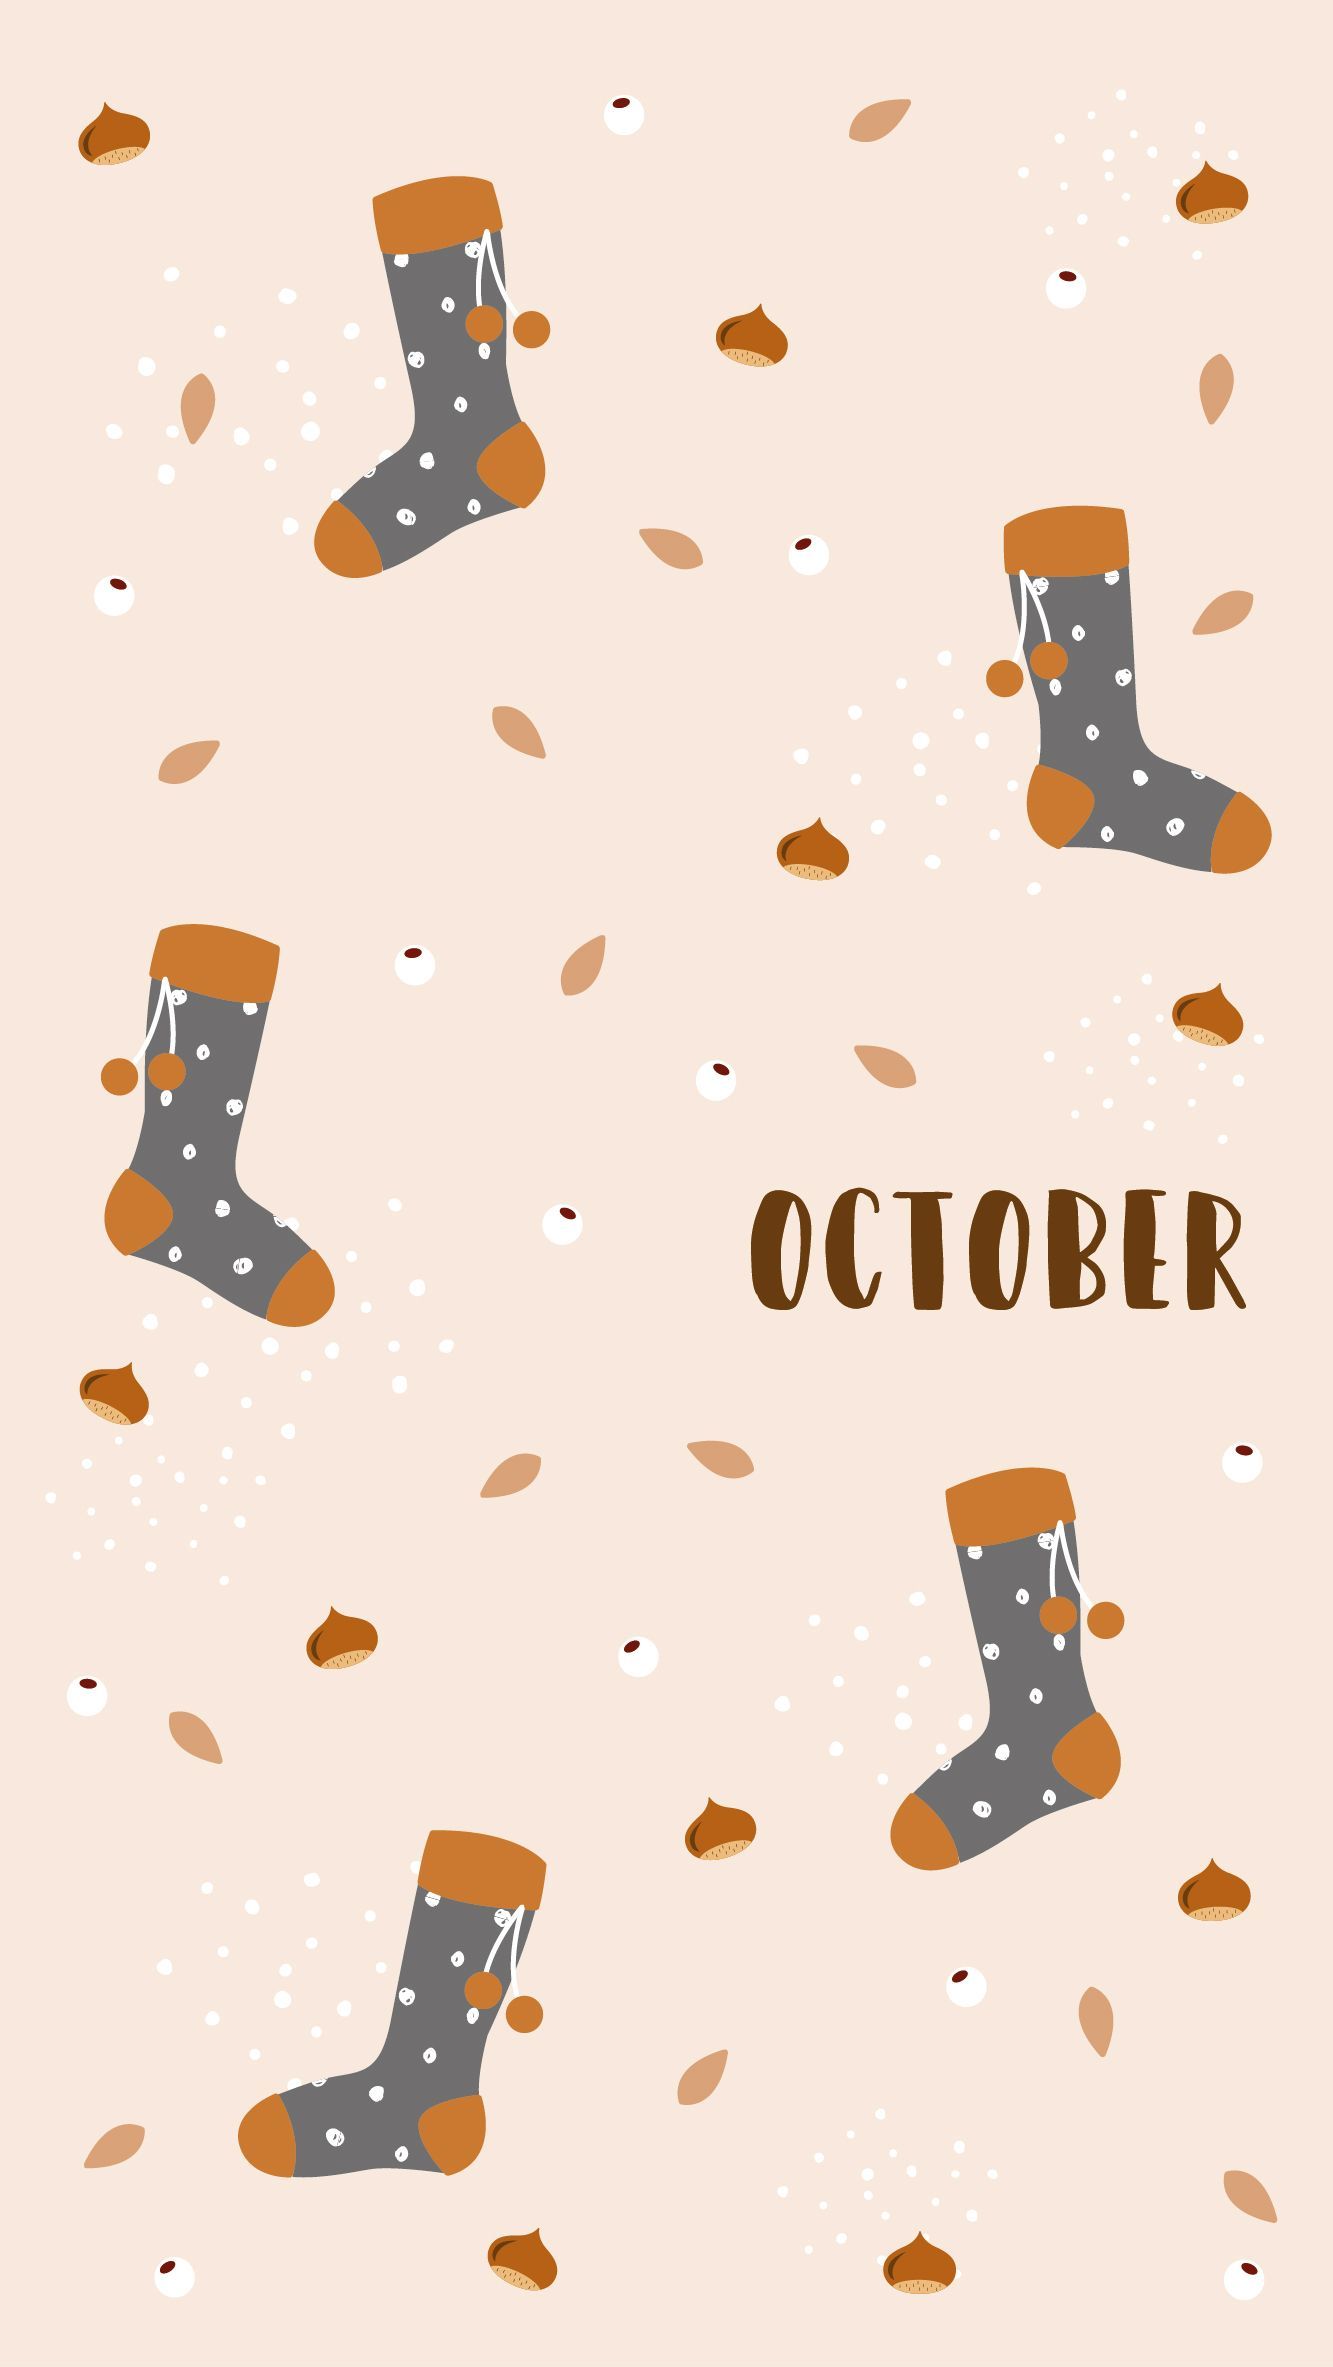 Socks pattern #autumn #october #socks. Fall wallpaper, October wallpaper, Cute wallpaper